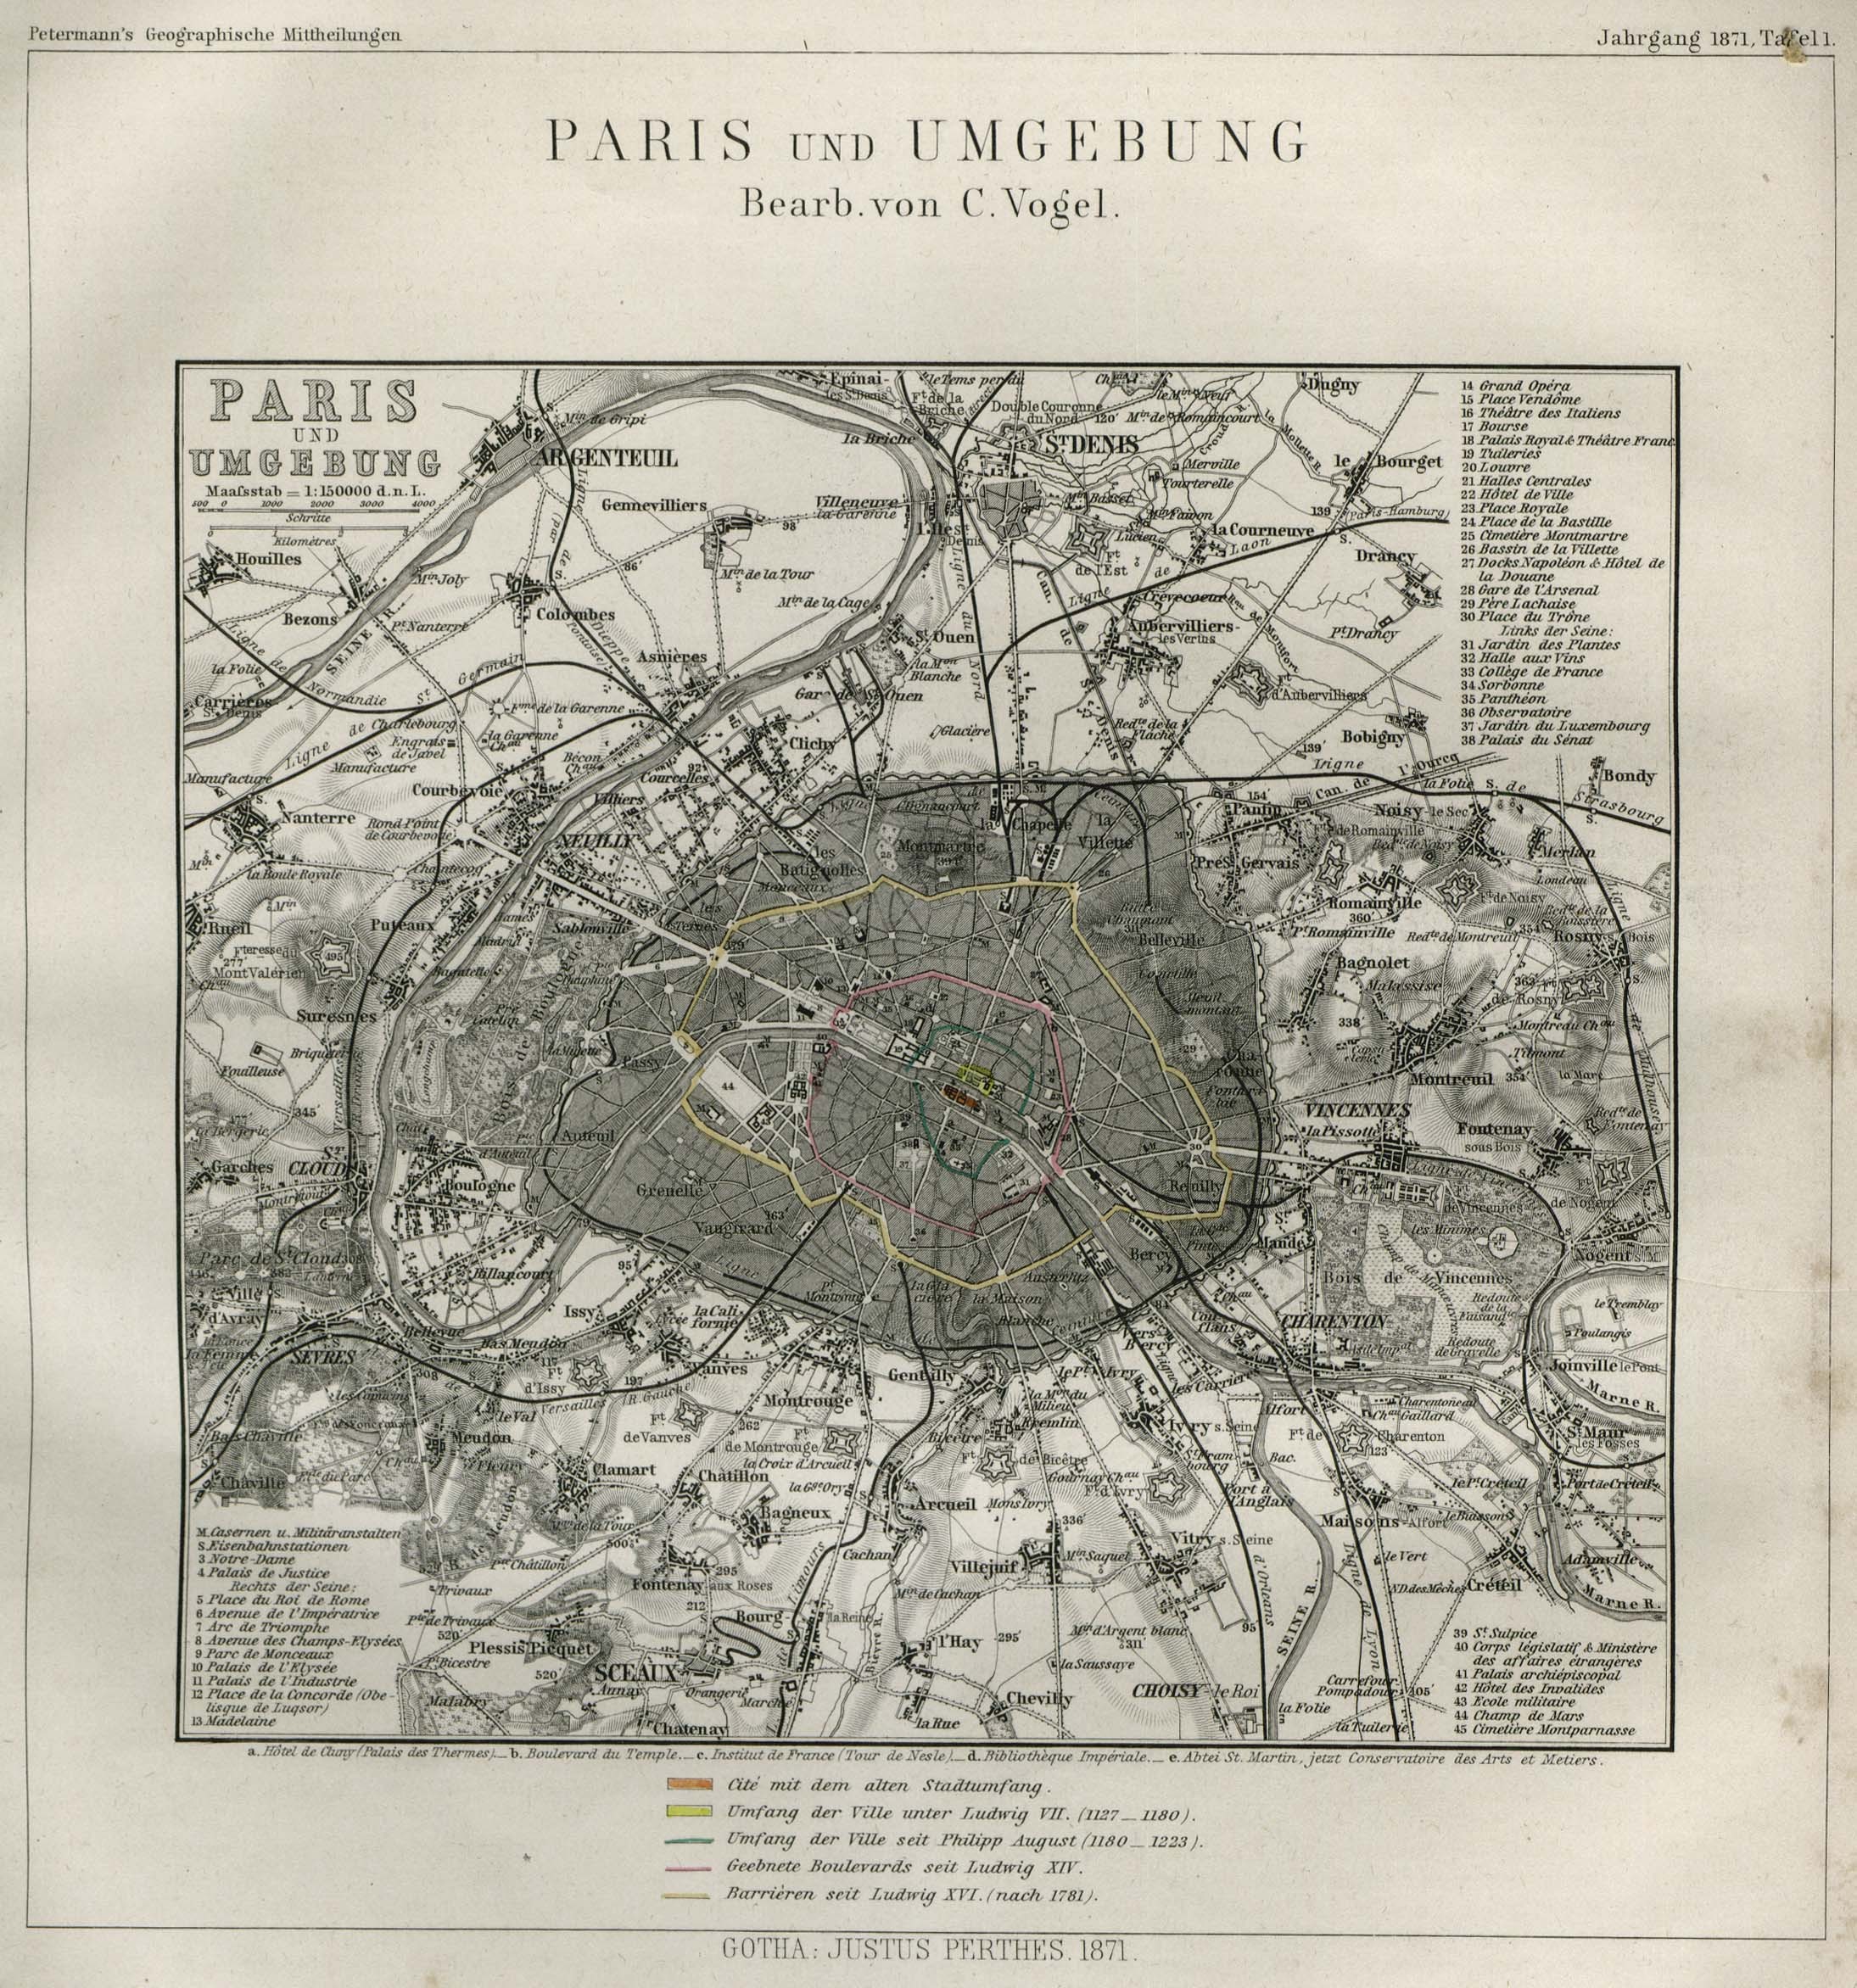 Carte de Paris et alentours prussienne de 1871 (source : gallica.bnf.fr)